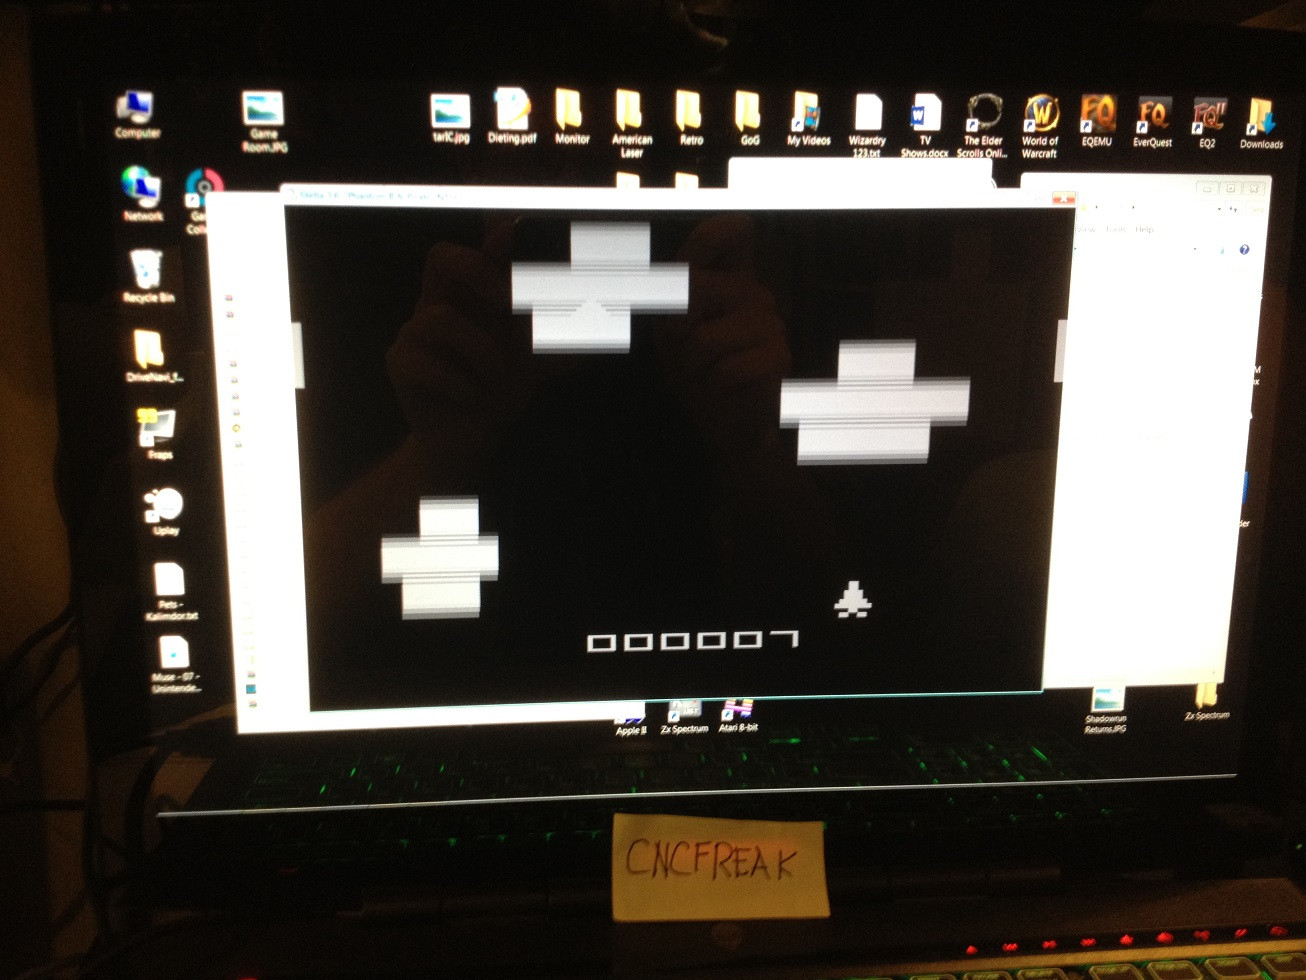 cncfreak: Phantom II (Atari 2600 Emulated Novice/B Mode) 7 points on 2013-10-15 21:50:53